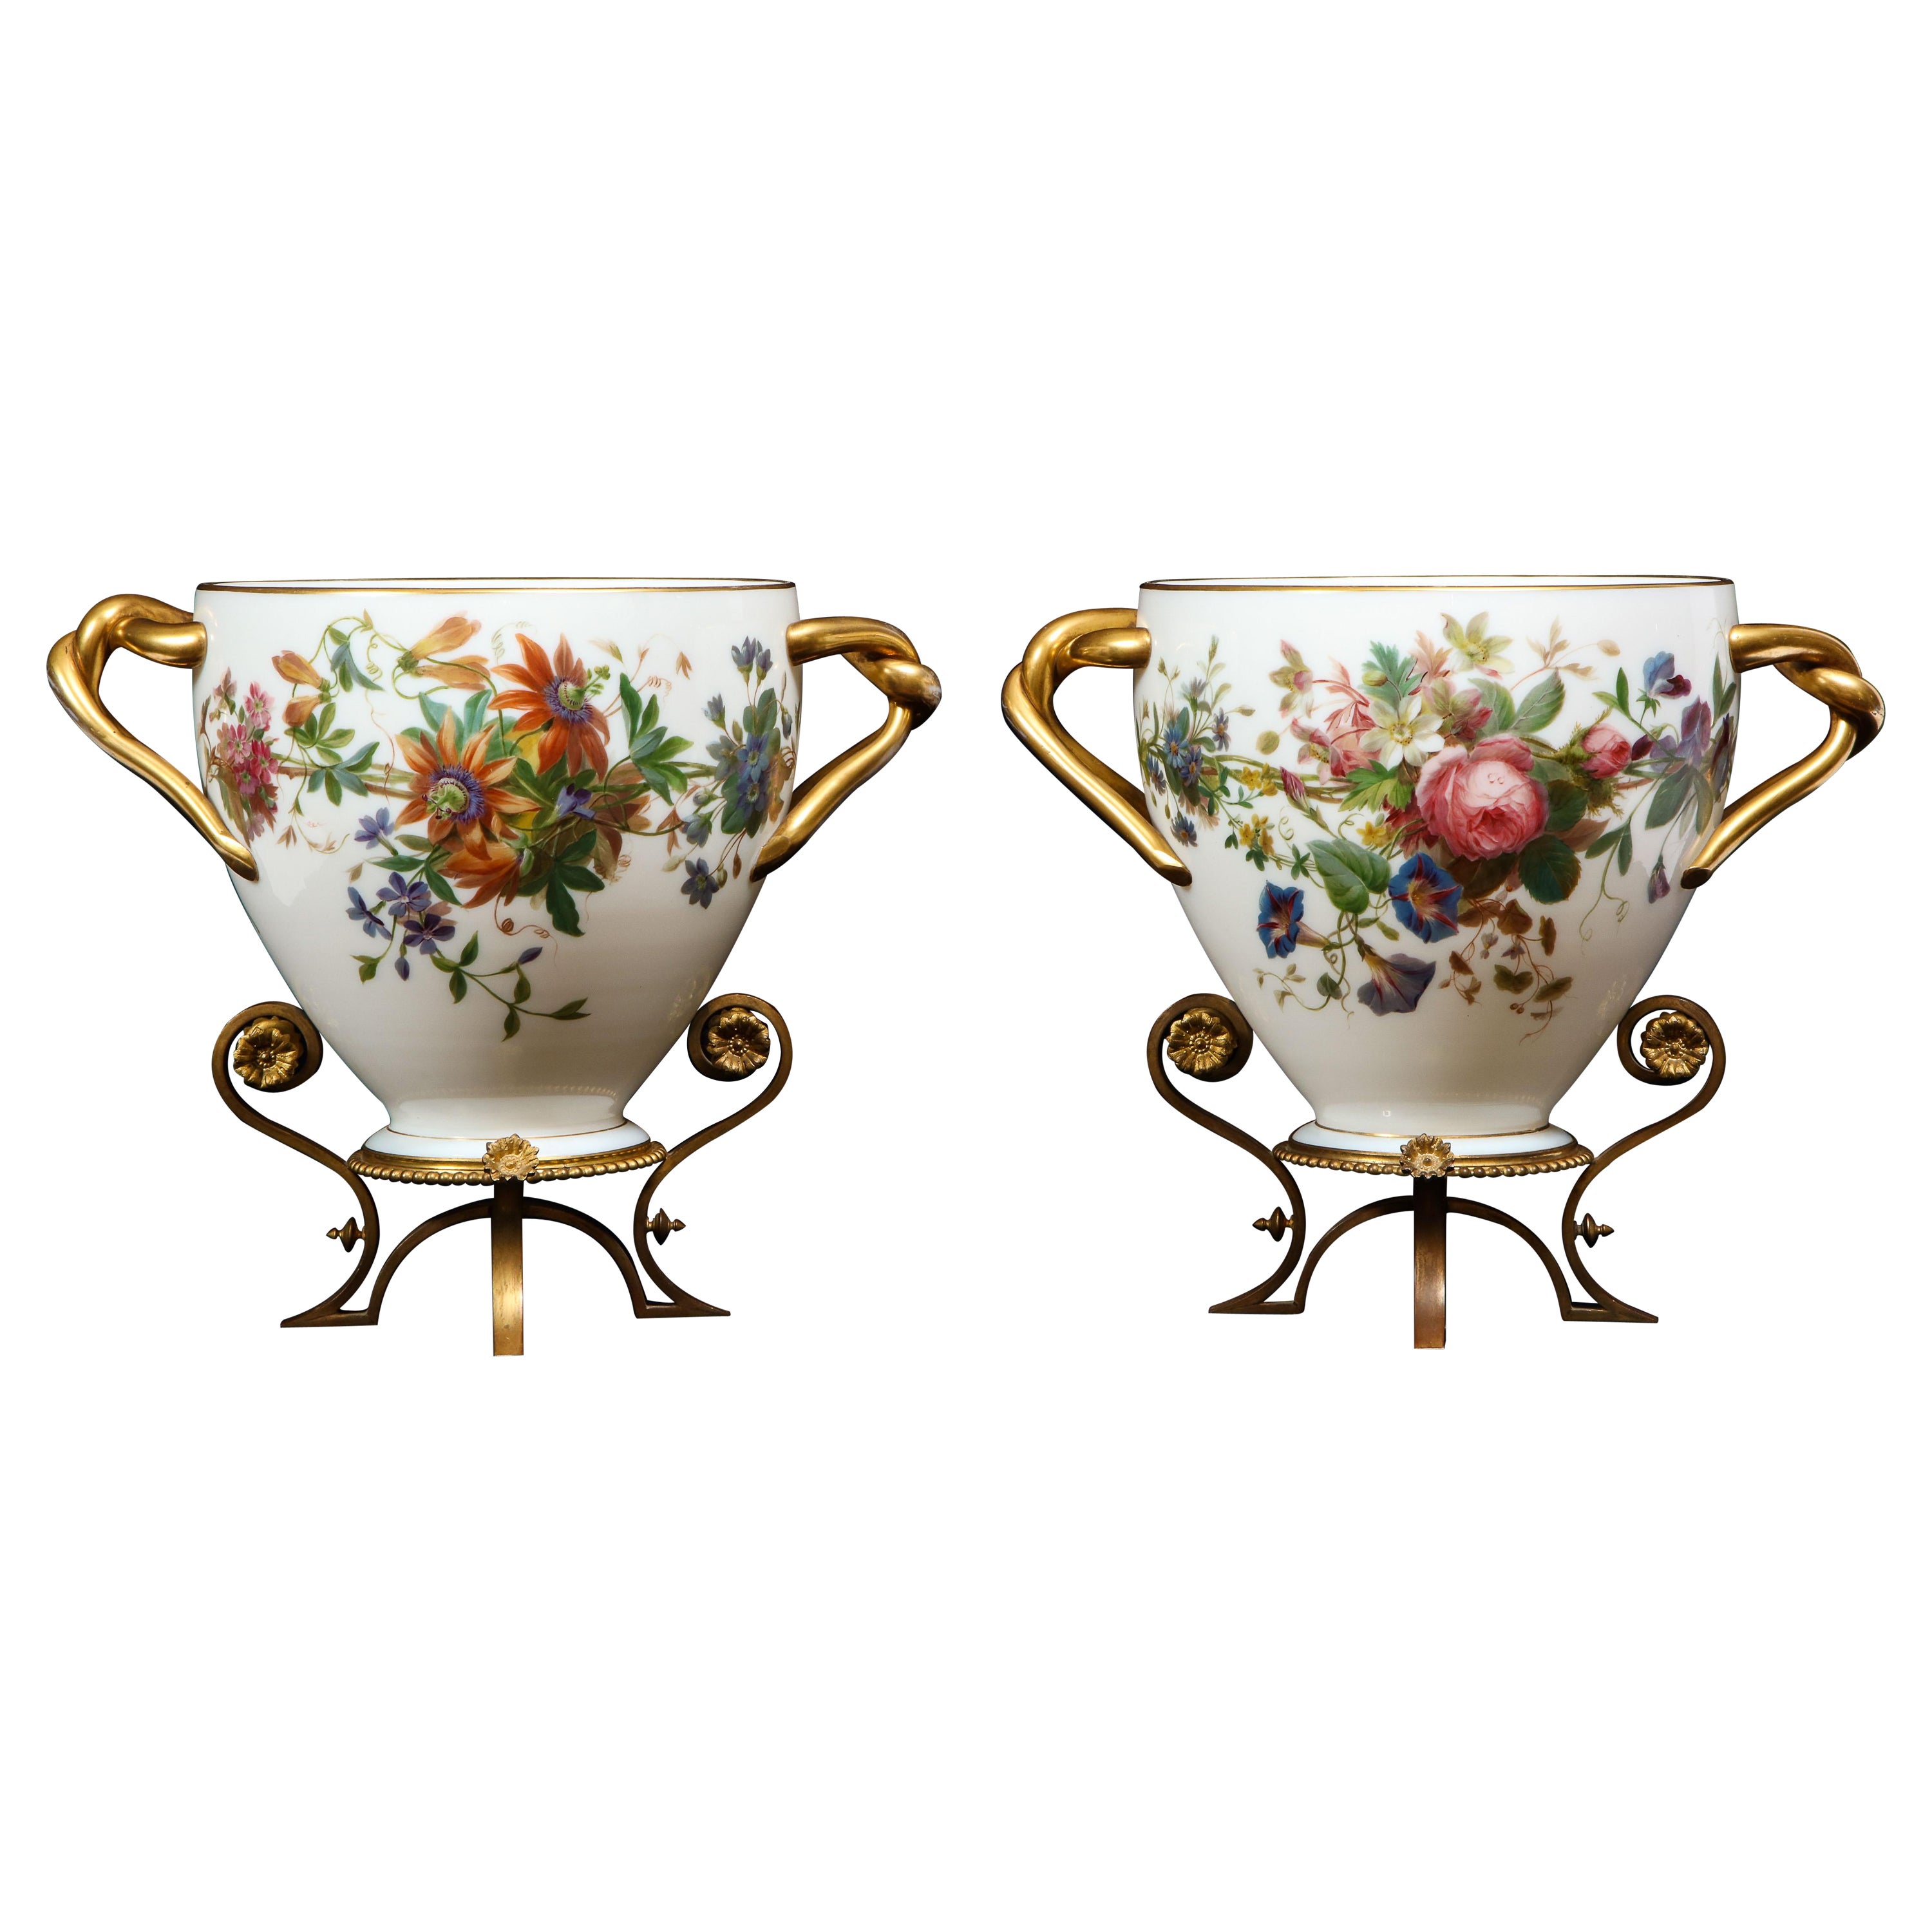 Importante paire de vases en opaline blanche peints à la main et émaillés, signés par Baccarat